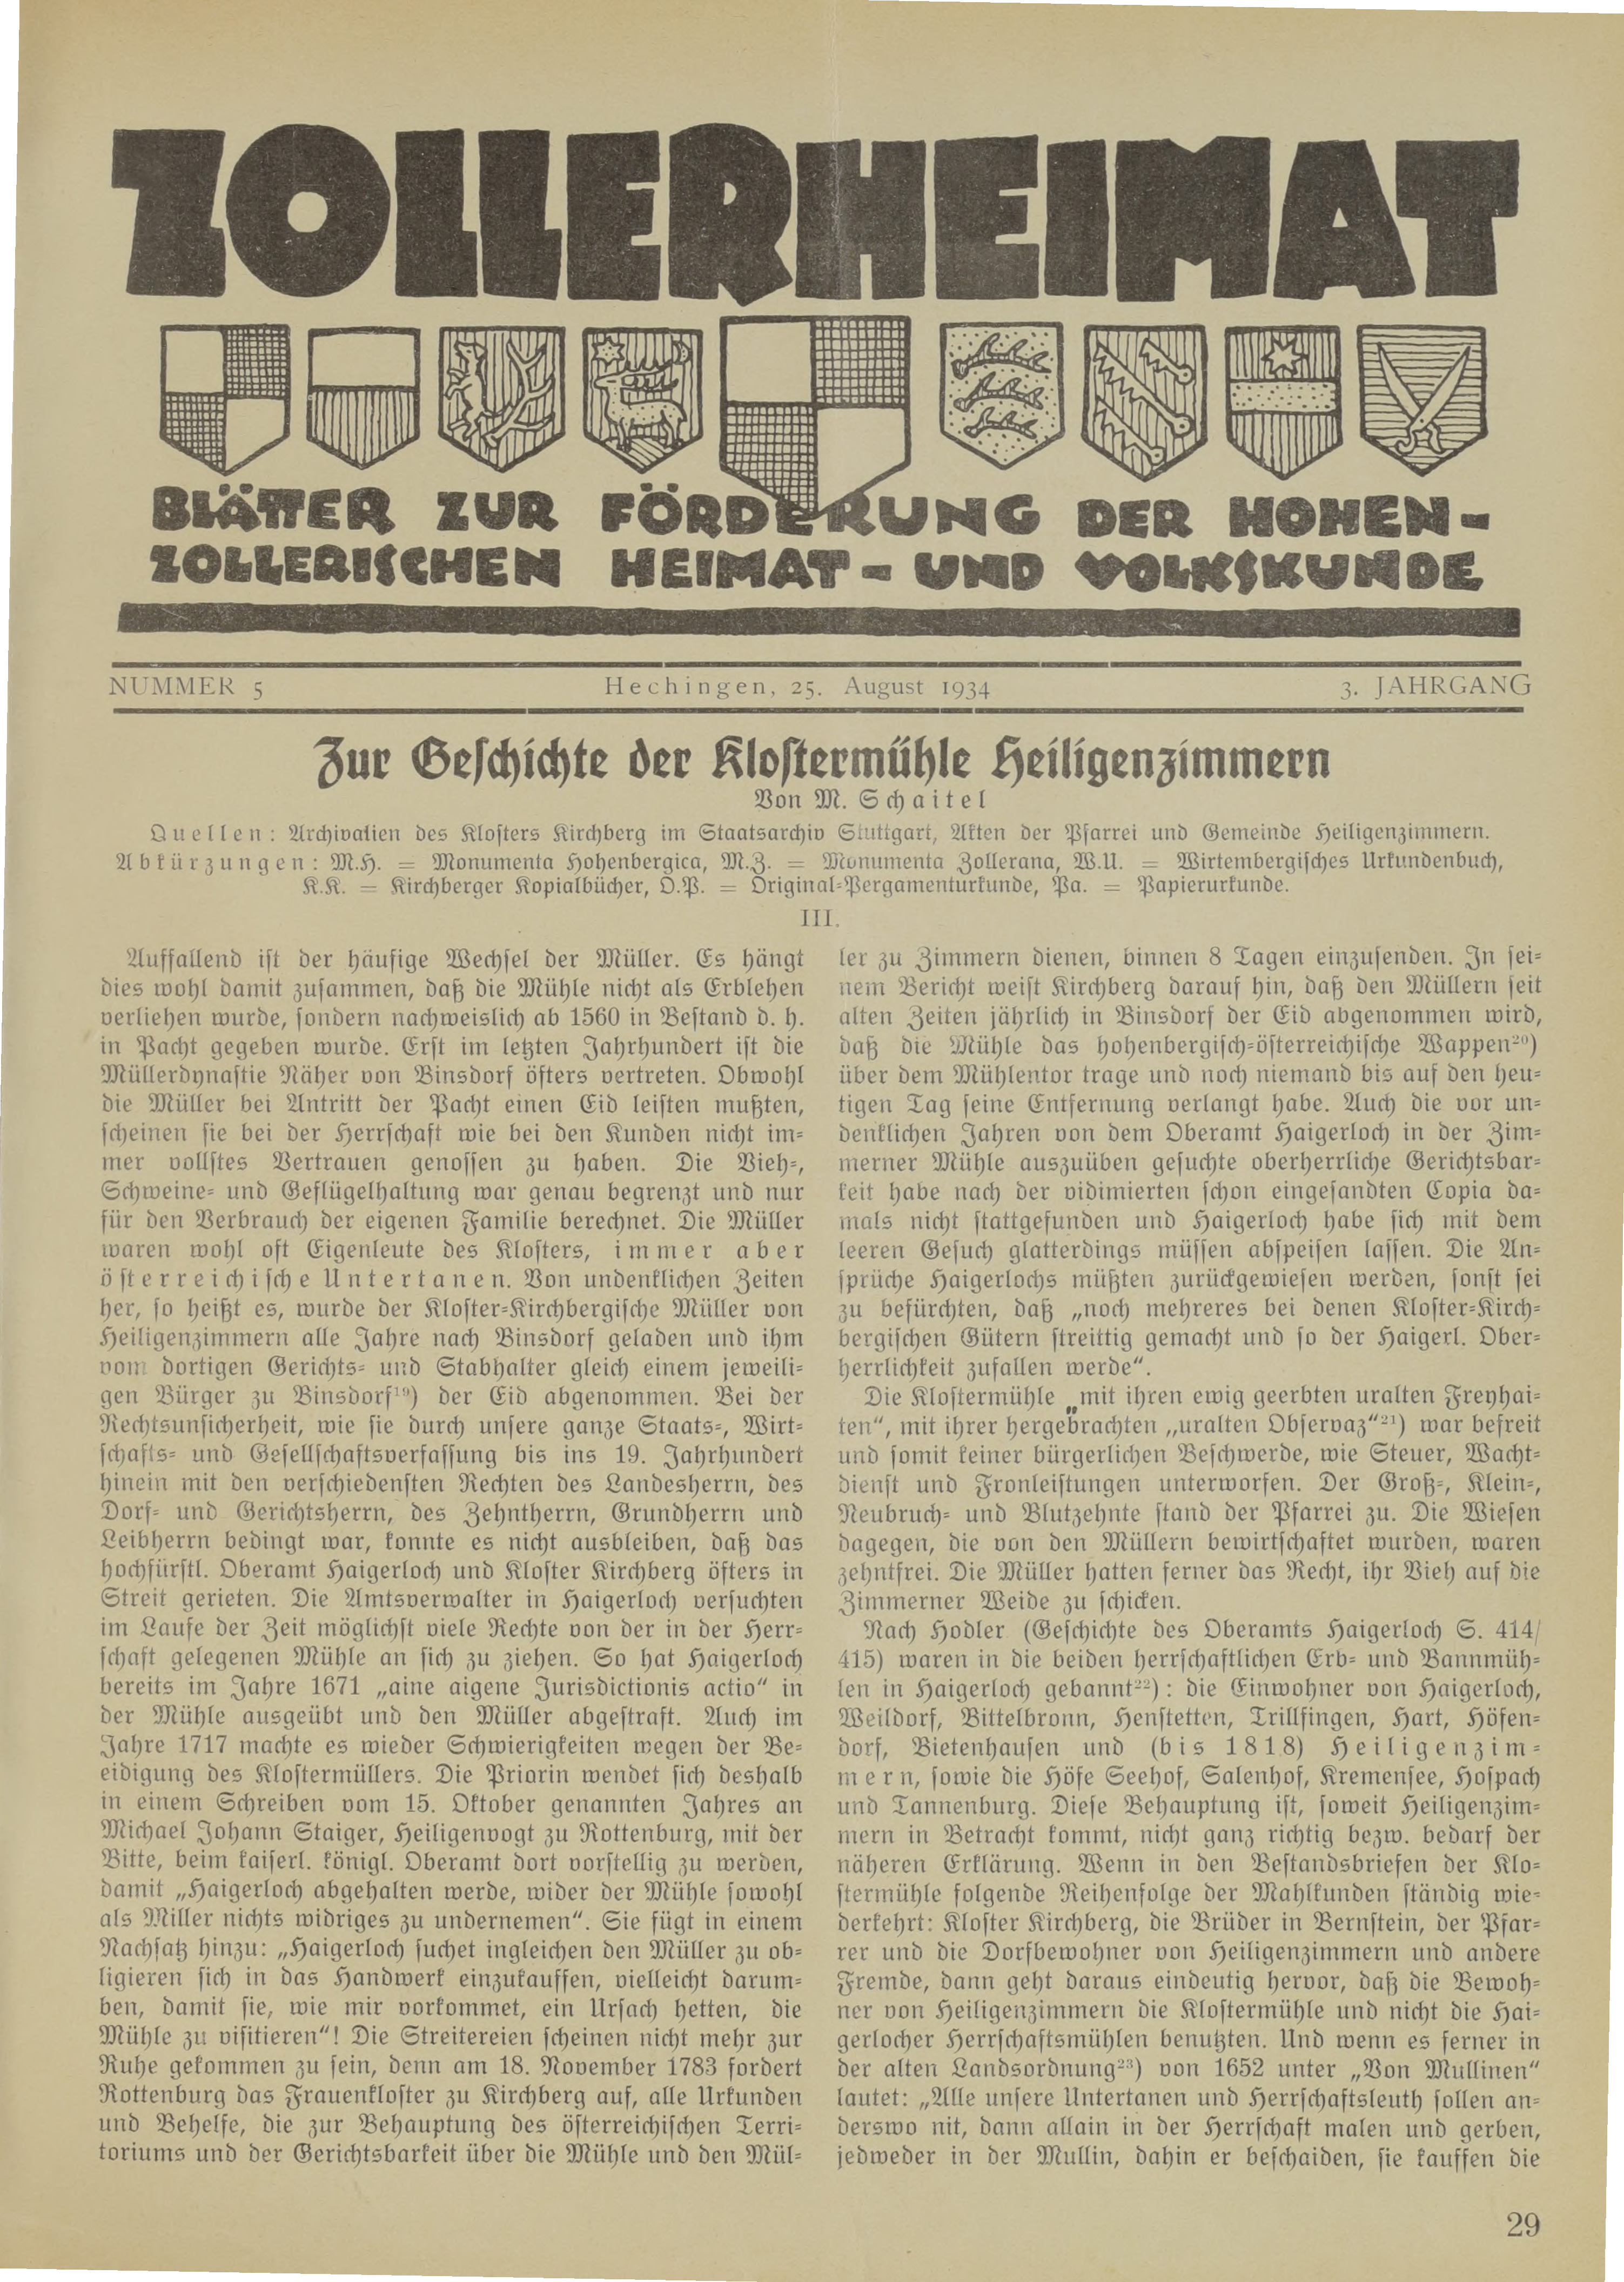                     Ansehen Bd. 3 Nr. 5 (1934): Zollerheimat
                